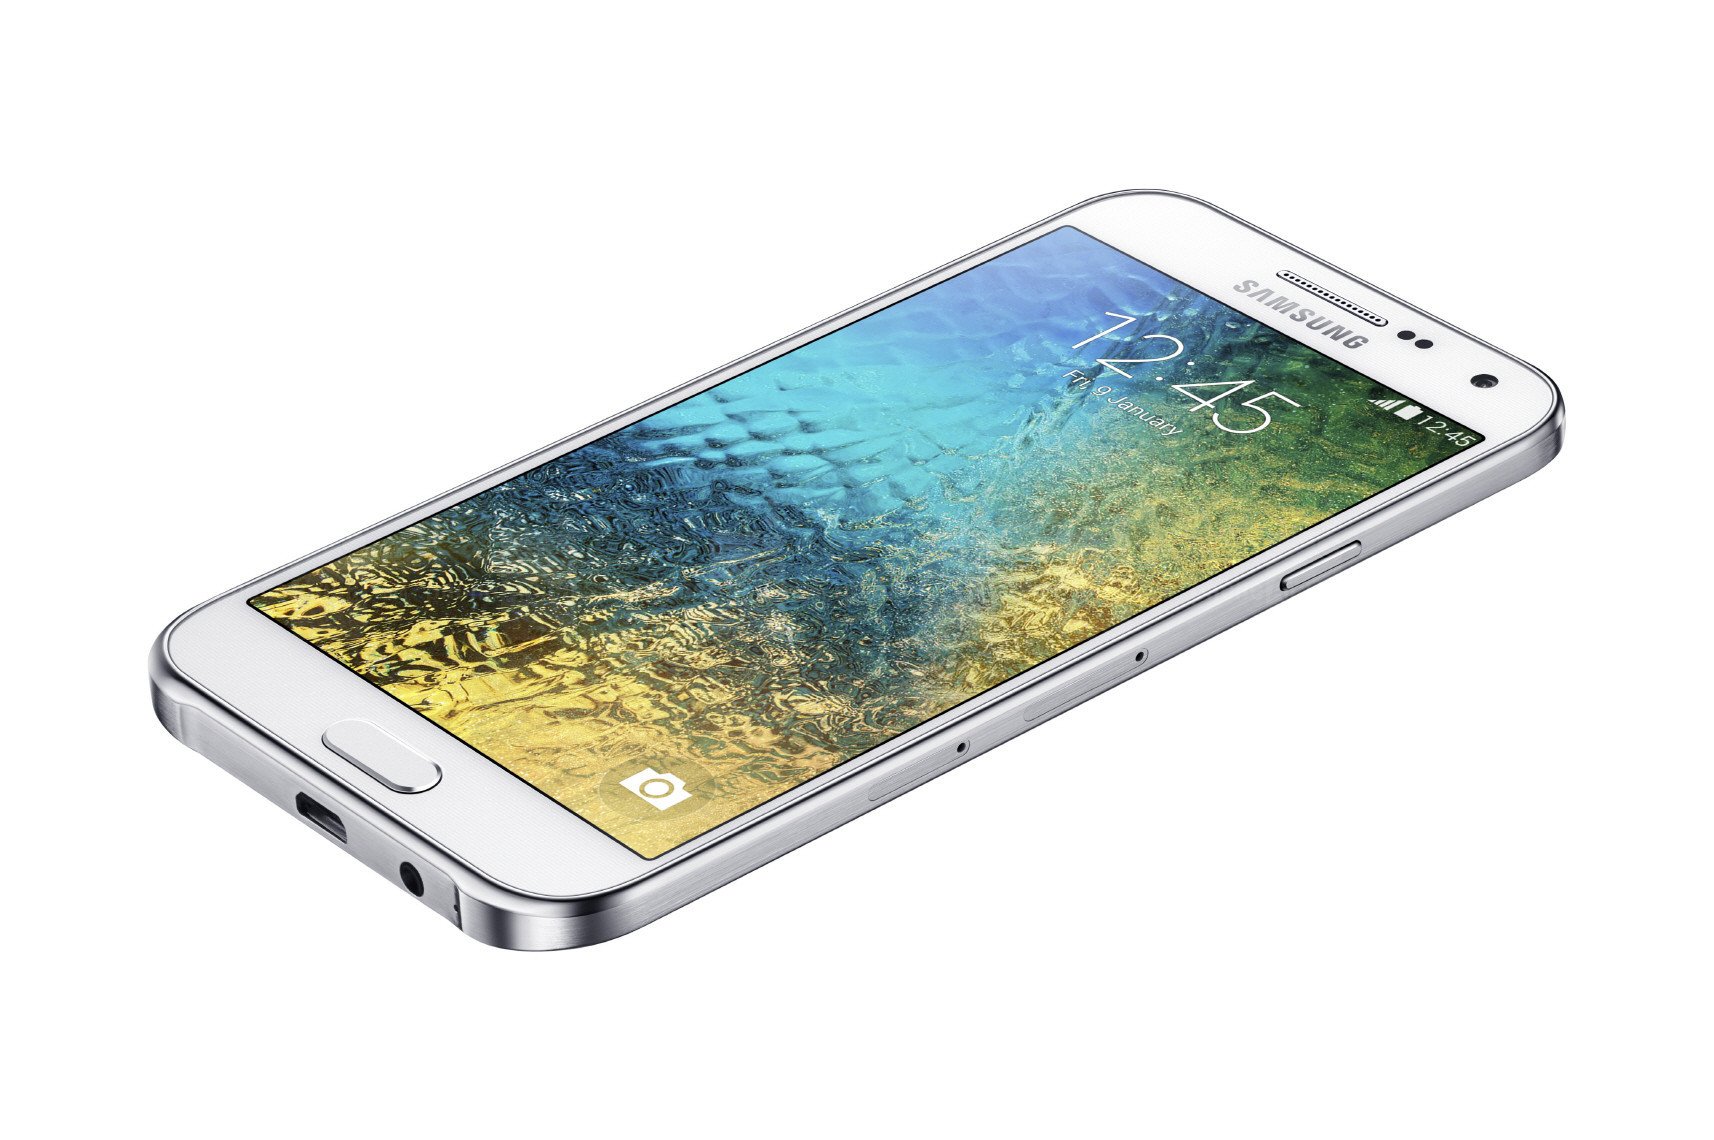 Samsung Galaxy E7 pictures, official photos